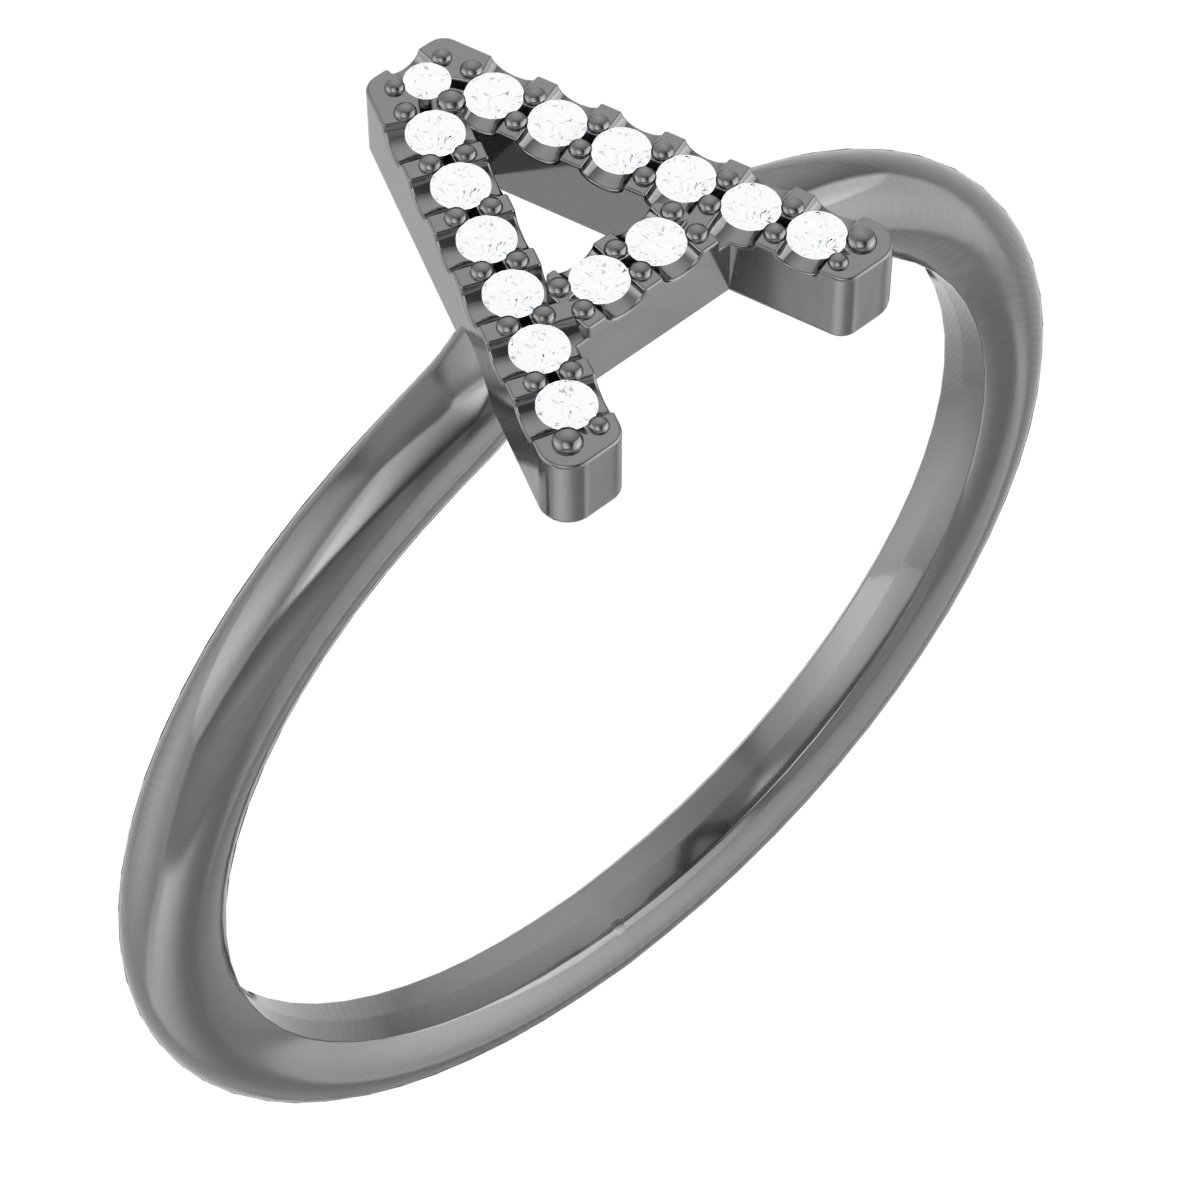 Platinum .06 CTW Diamond Initial A Ring Ref. 15158430